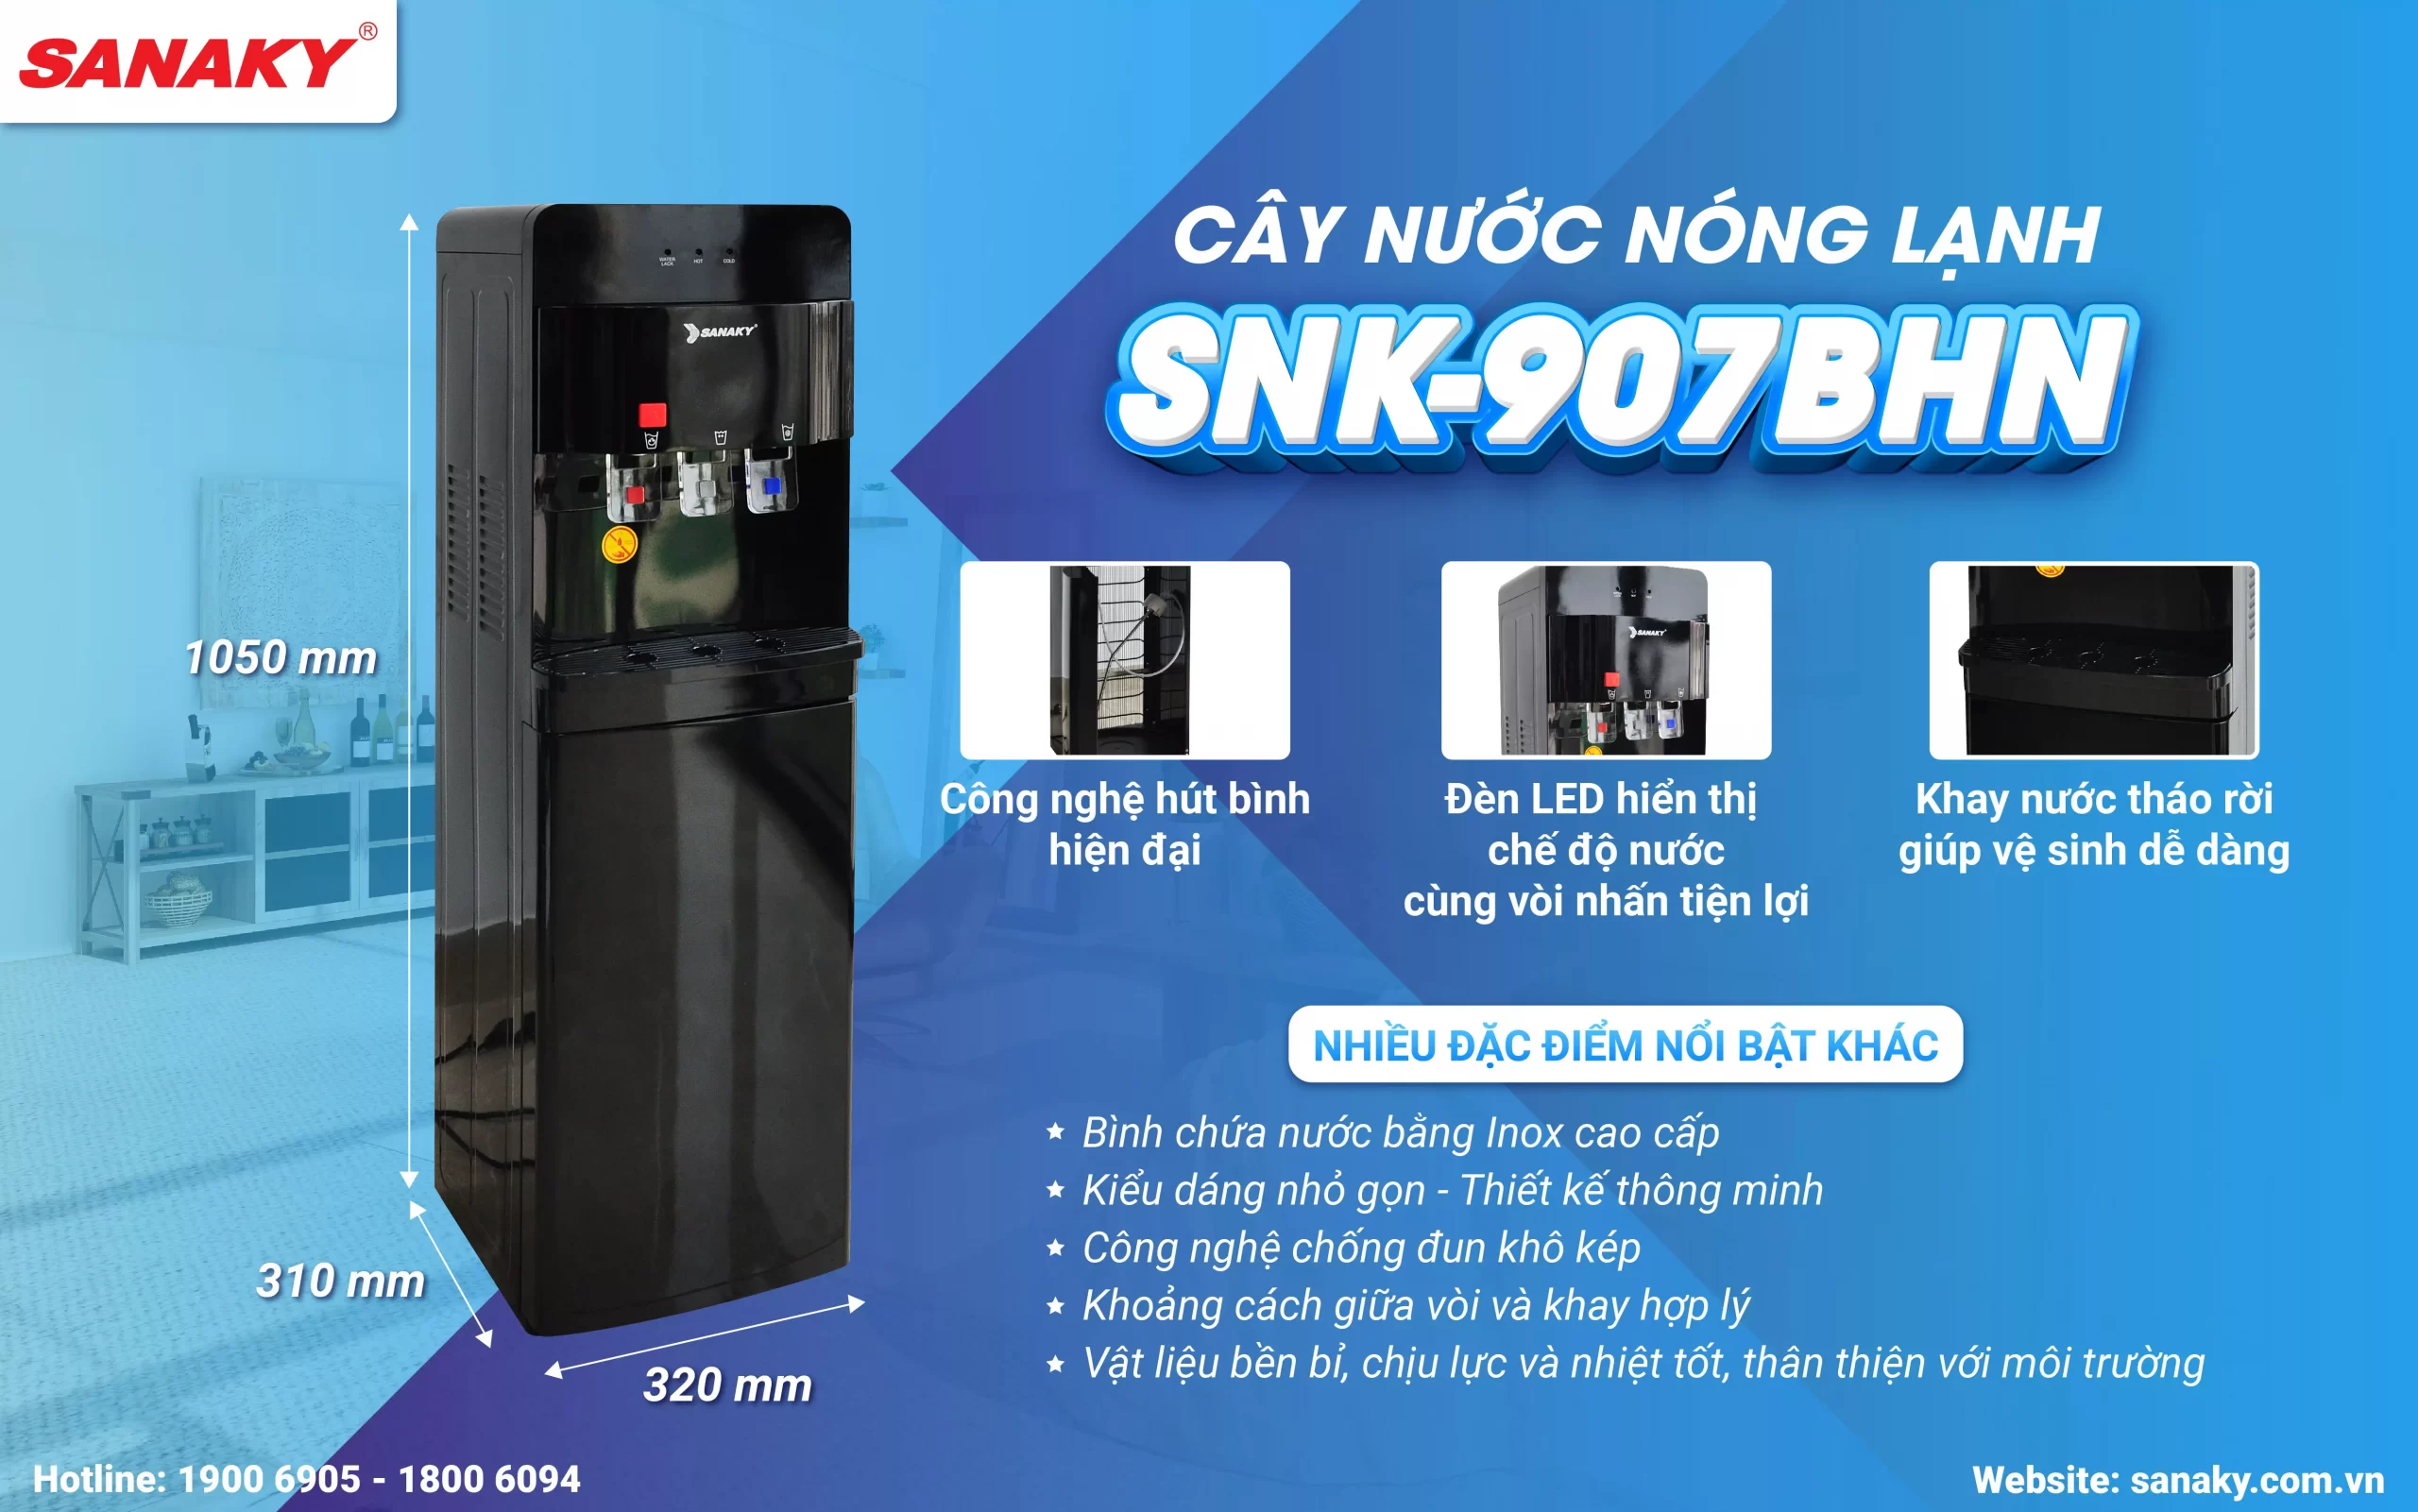 Cây nước nóng lạnh Sanaky SNK-907BHN